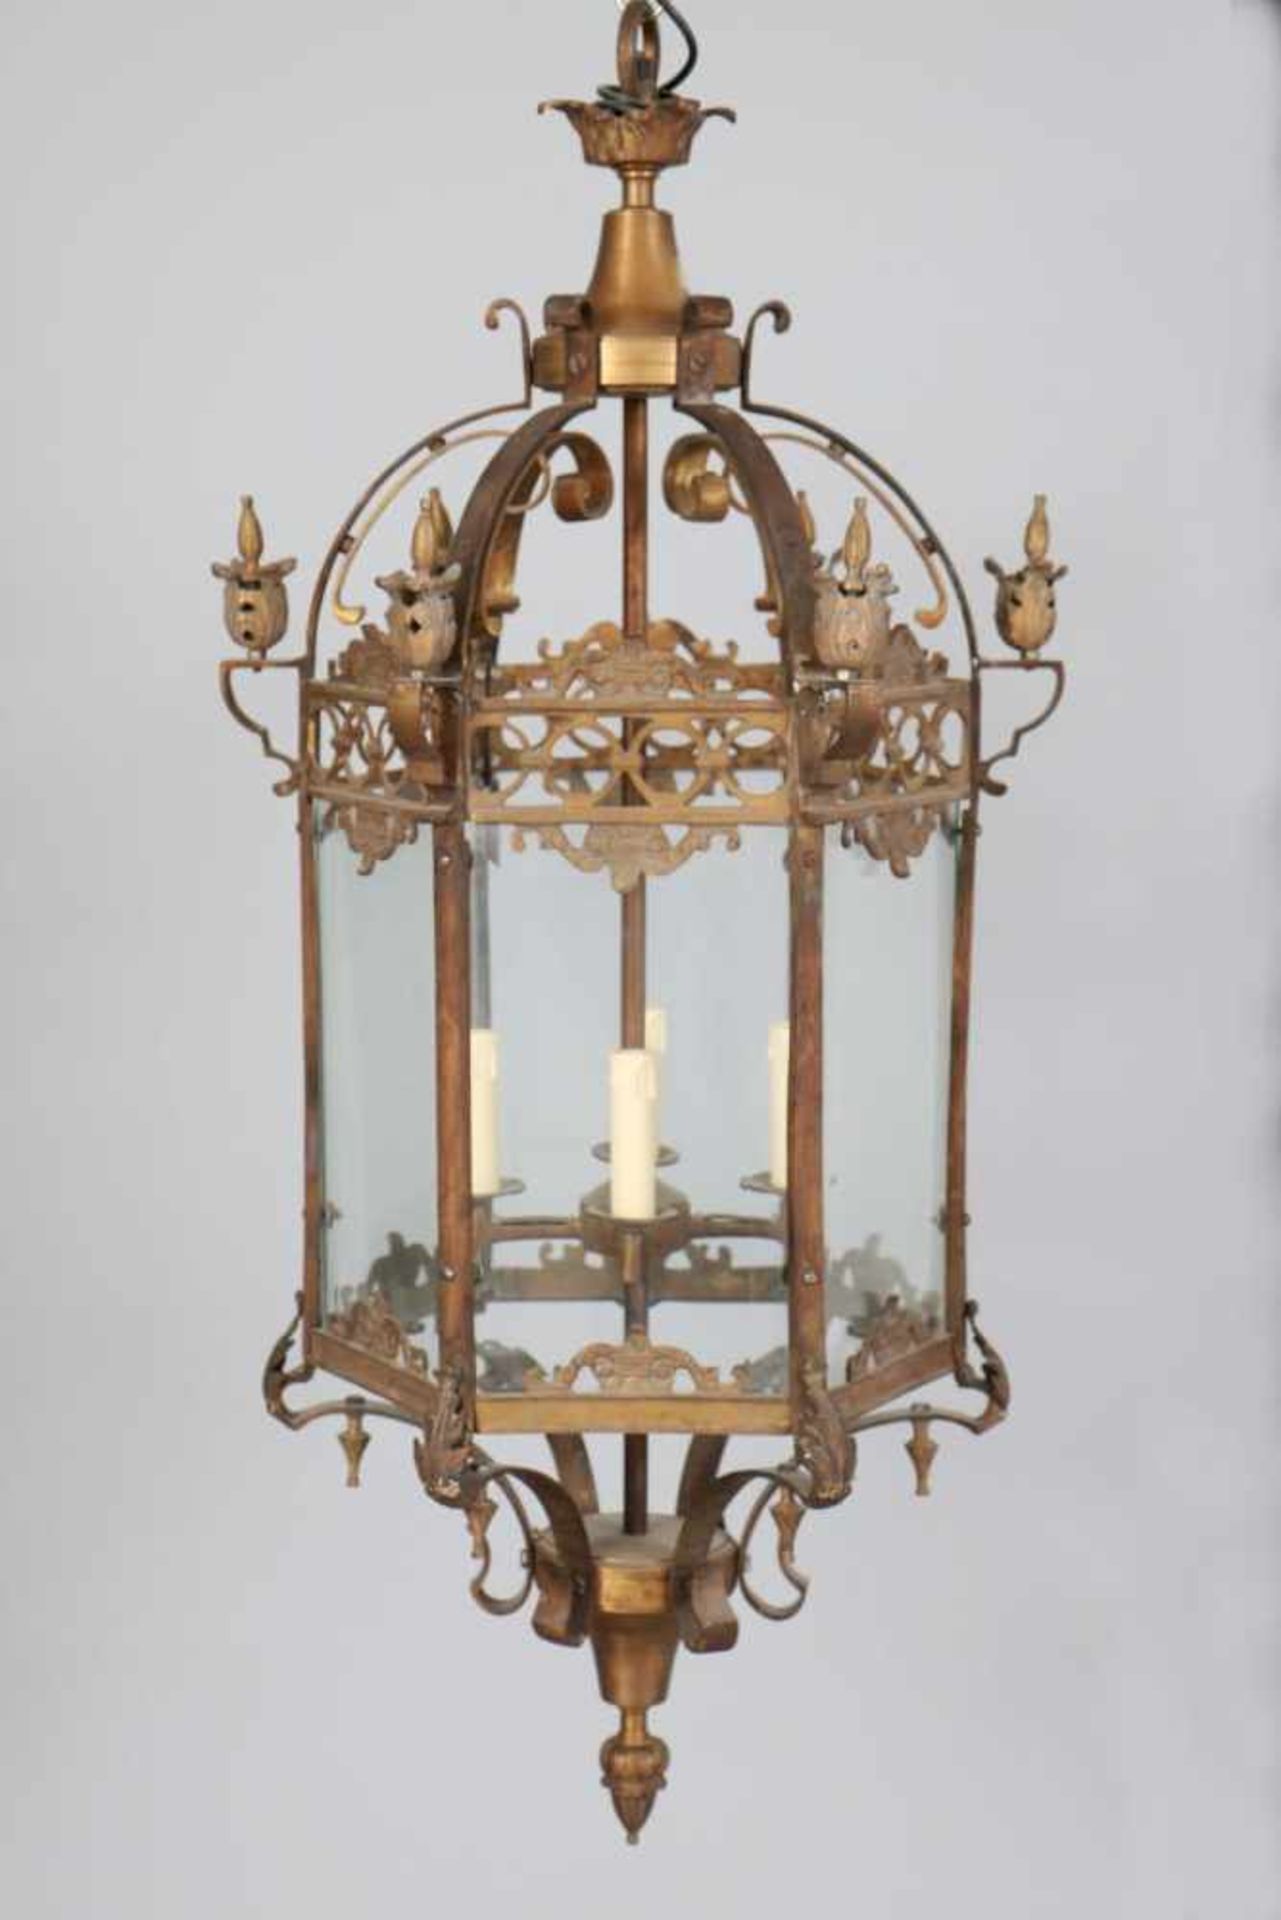 Deckenlampe, Bronze und Glas, Ampelform ("Laterne")polygonaler Korpus, verglast, mit Blätter- und